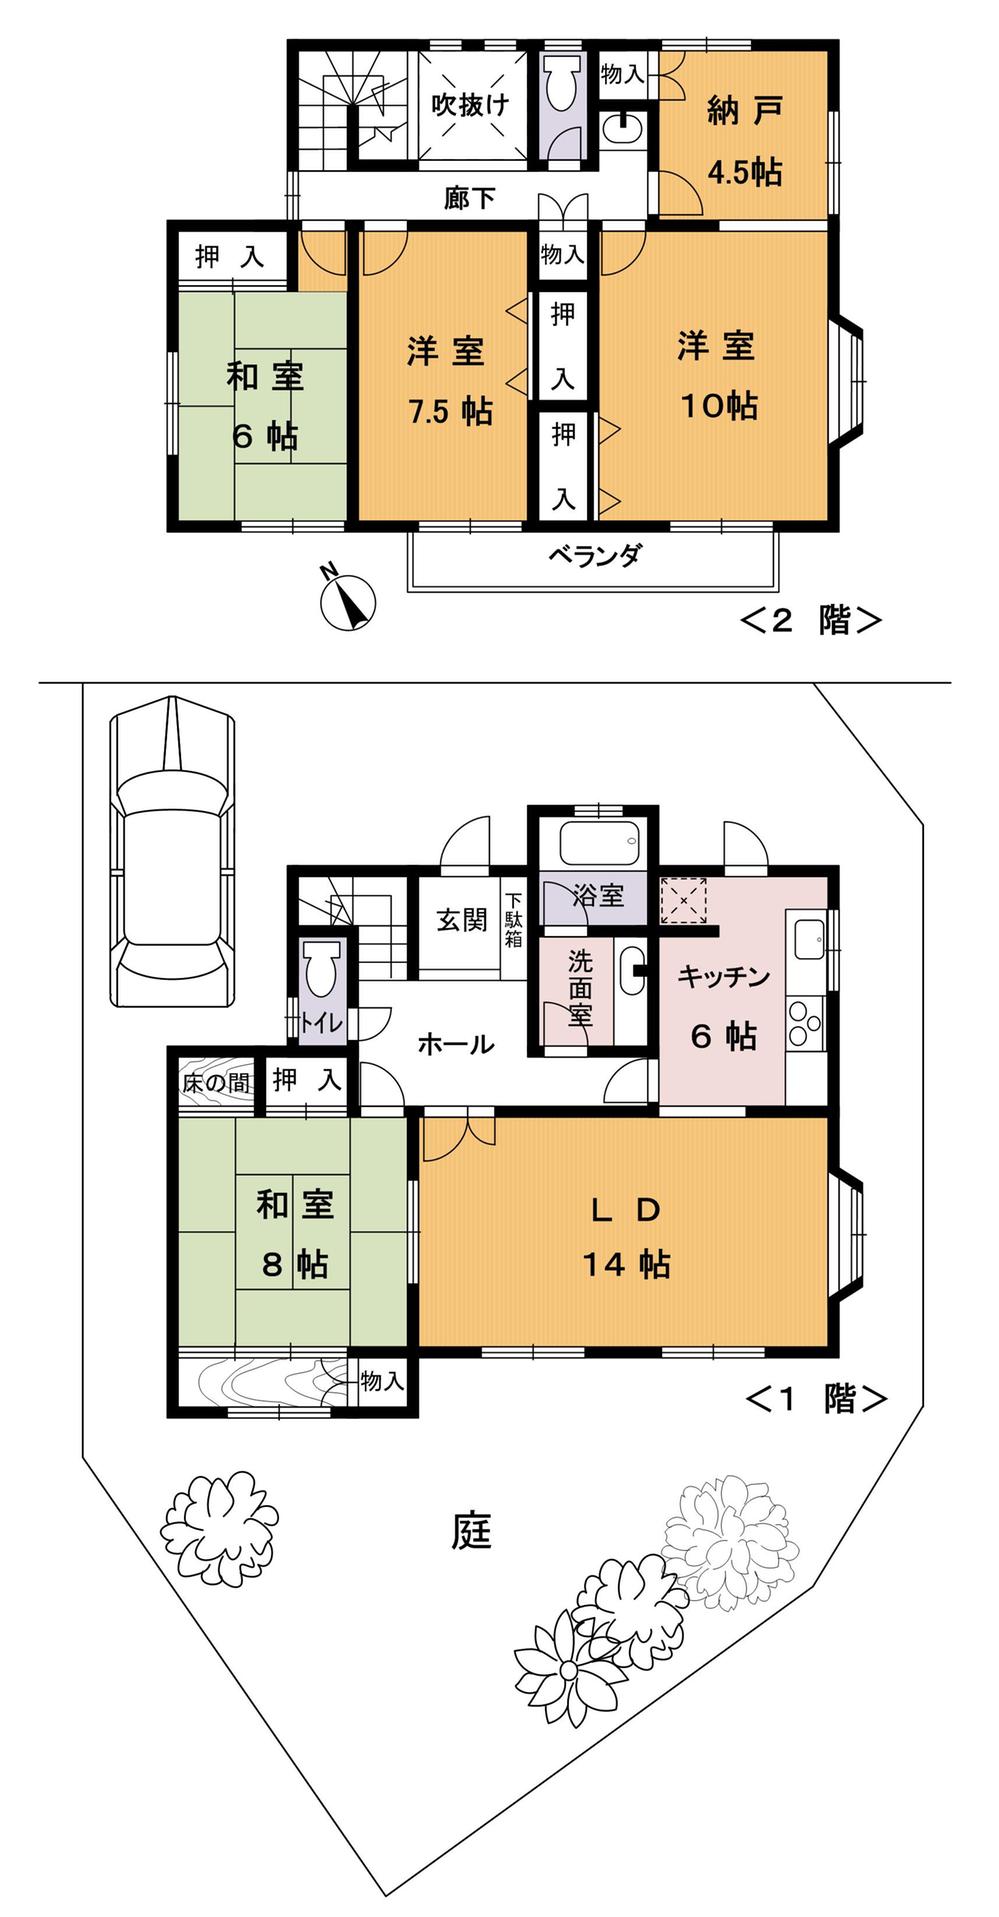 Floor plan. 22,800,000 yen, 4LDK + S (storeroom), Land area 215.06 sq m , Building area 137.46 sq m